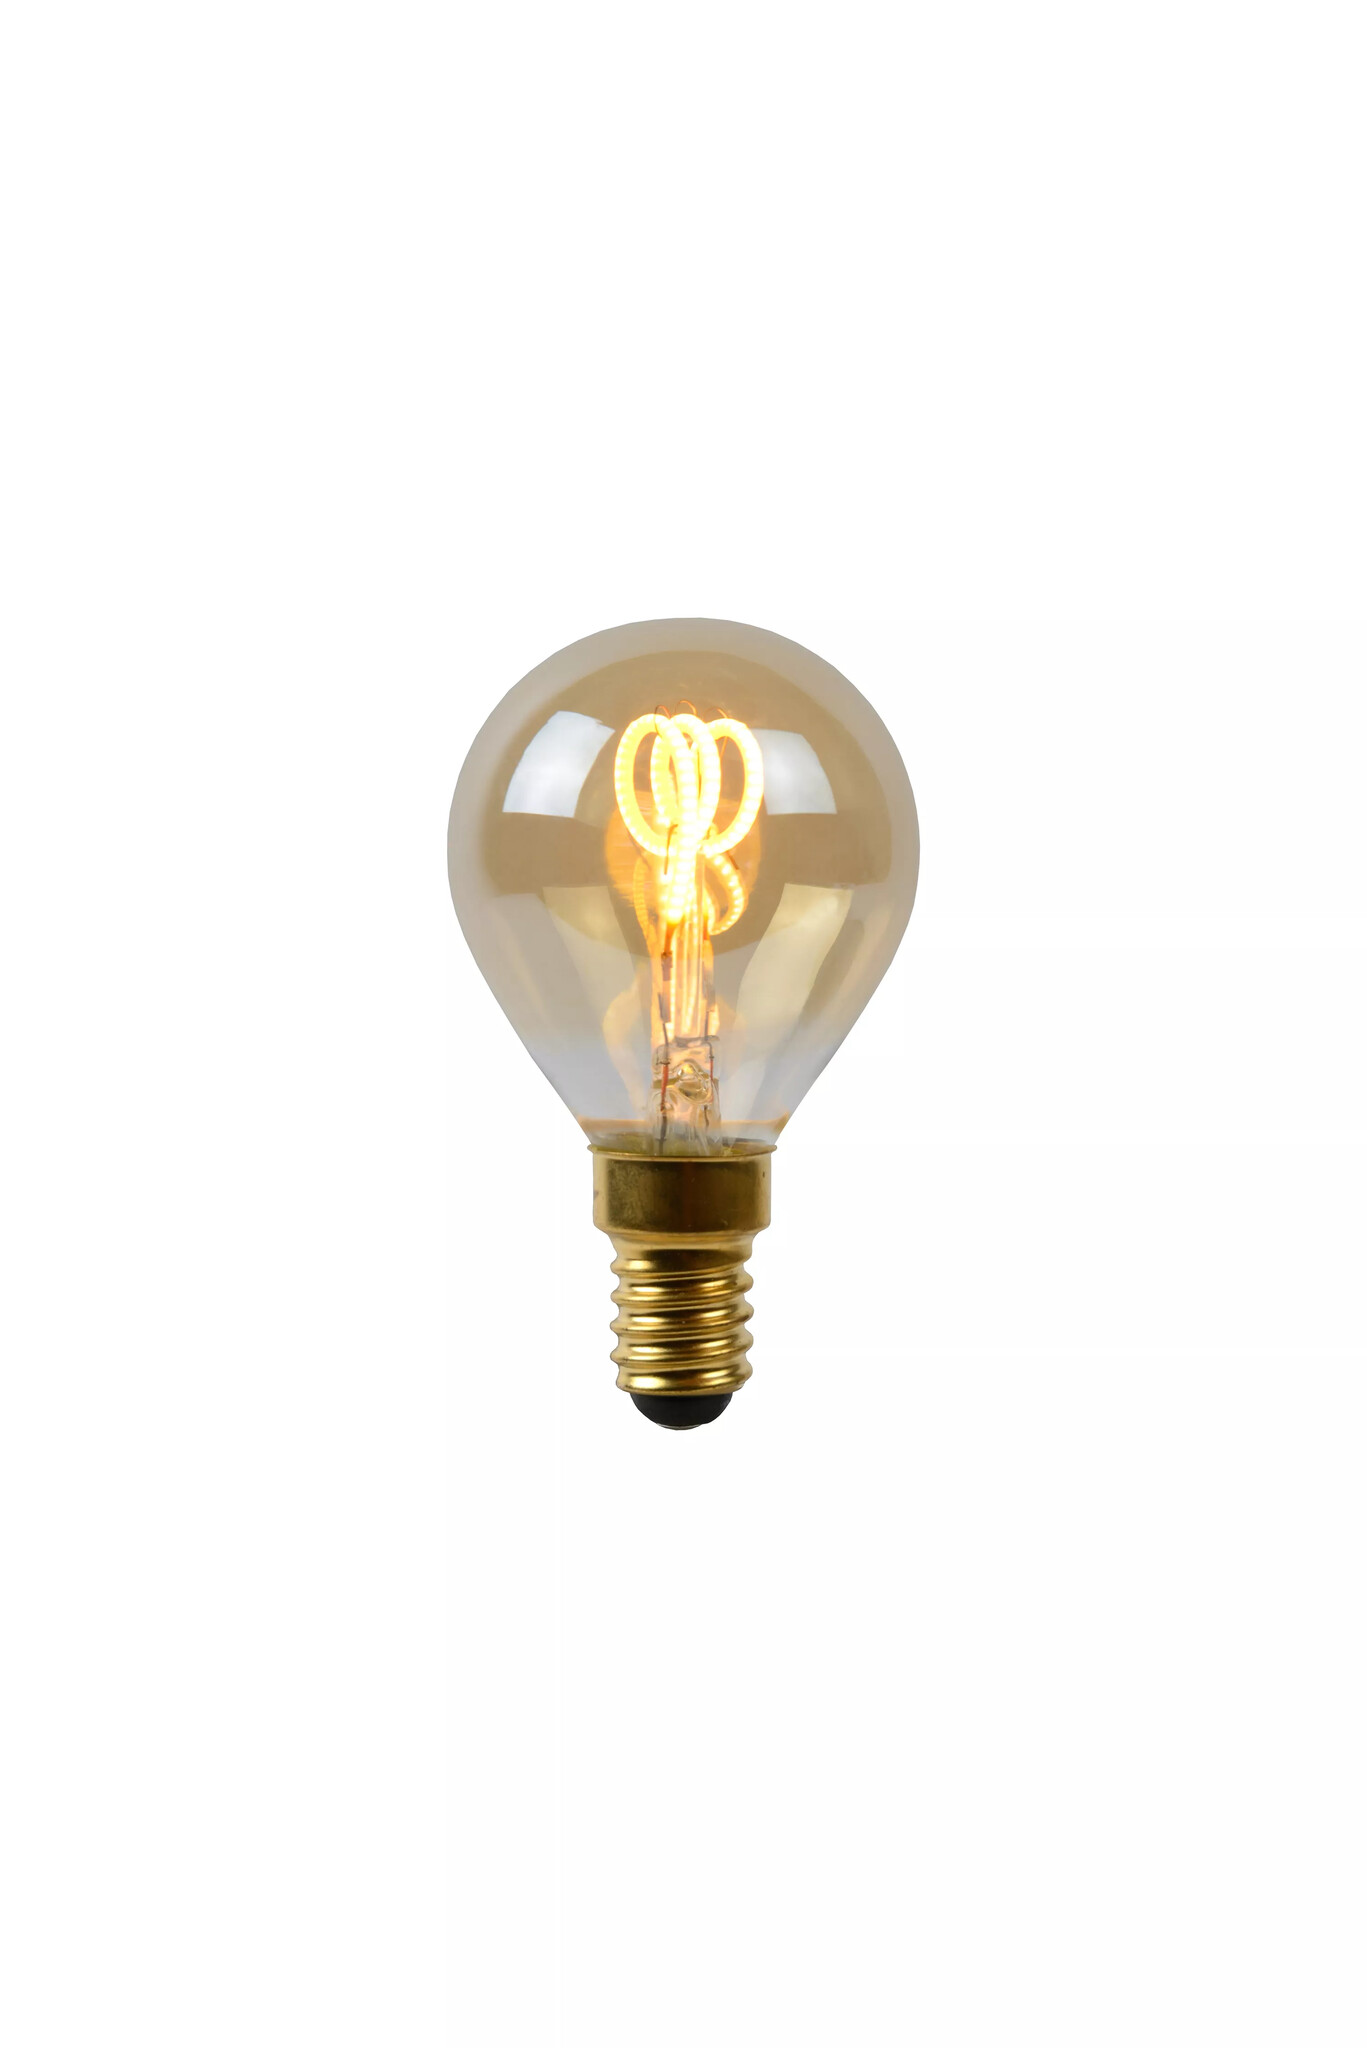 Petite ampoule boule E14 dimmable économique 3W ou 4W